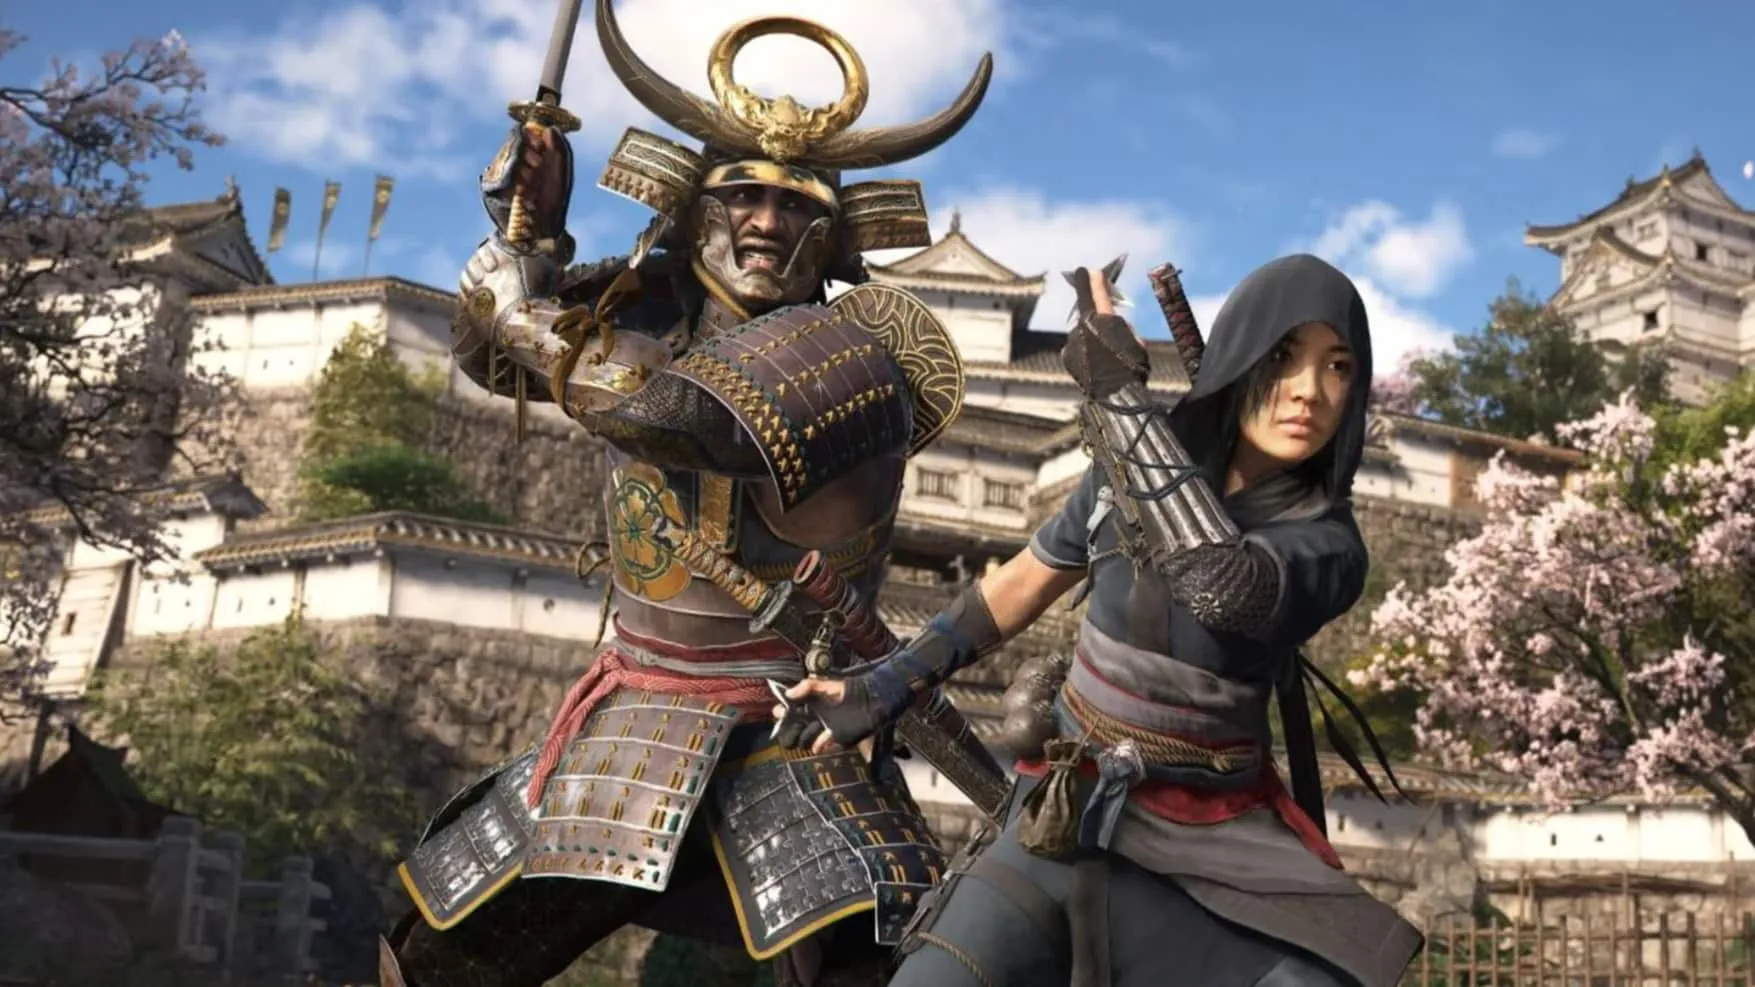 Assassin’s Creed Shadows получила официальную дату выхода, два главных героя в стиле Синдиката